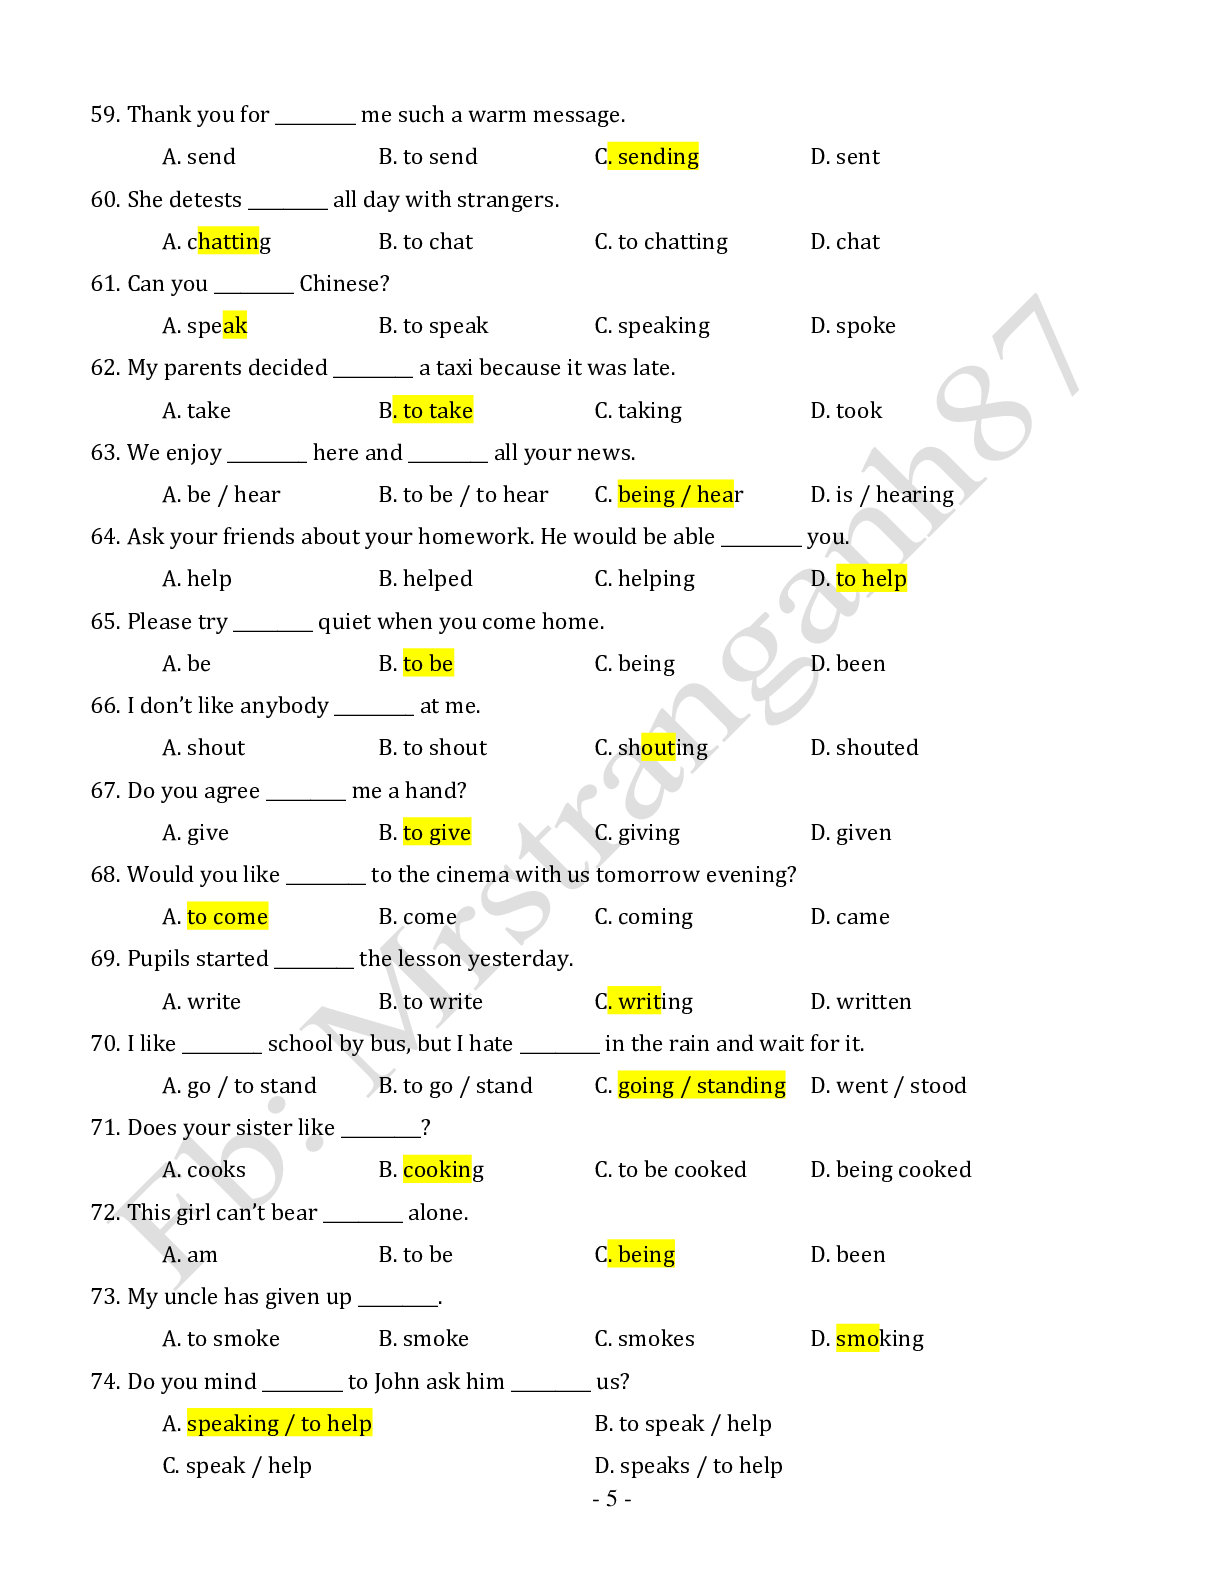 Chuyên đề: Danh động từ và động từ nguyên mẫu môn Tiếng Anh ôn thi THPTQG (trang 5)